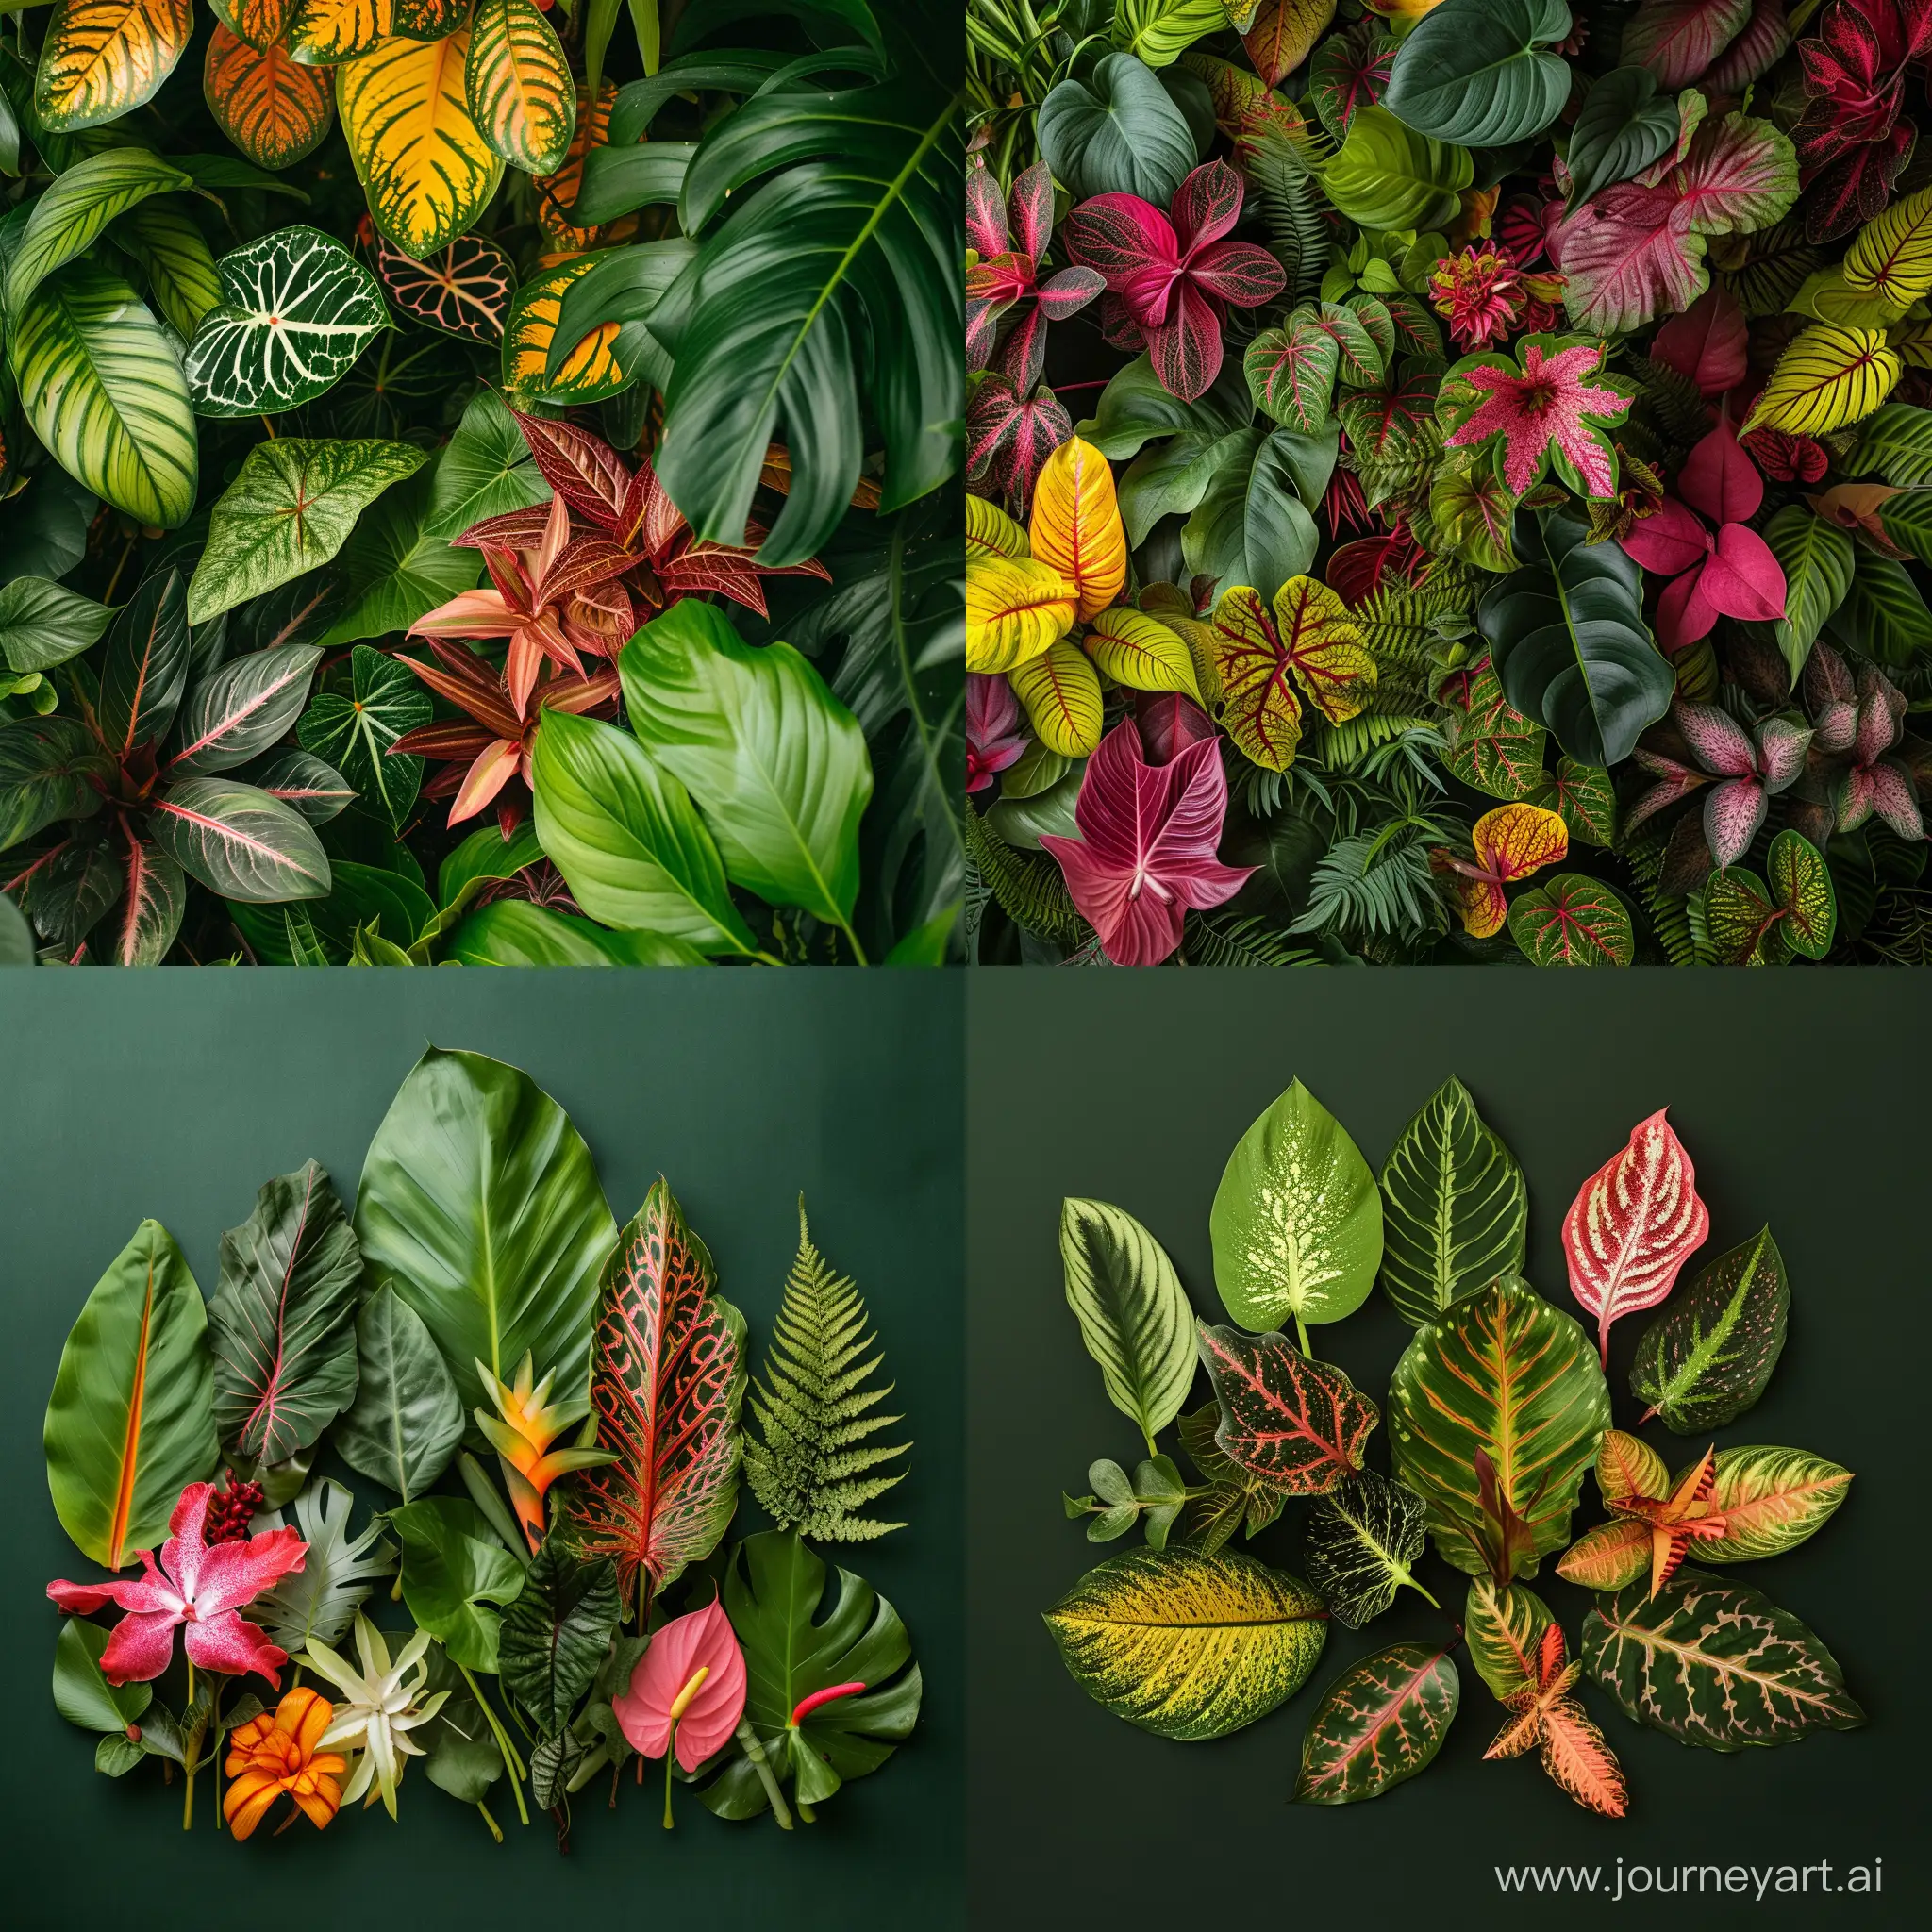 Экзотические растения мира: Красота в разнообразии